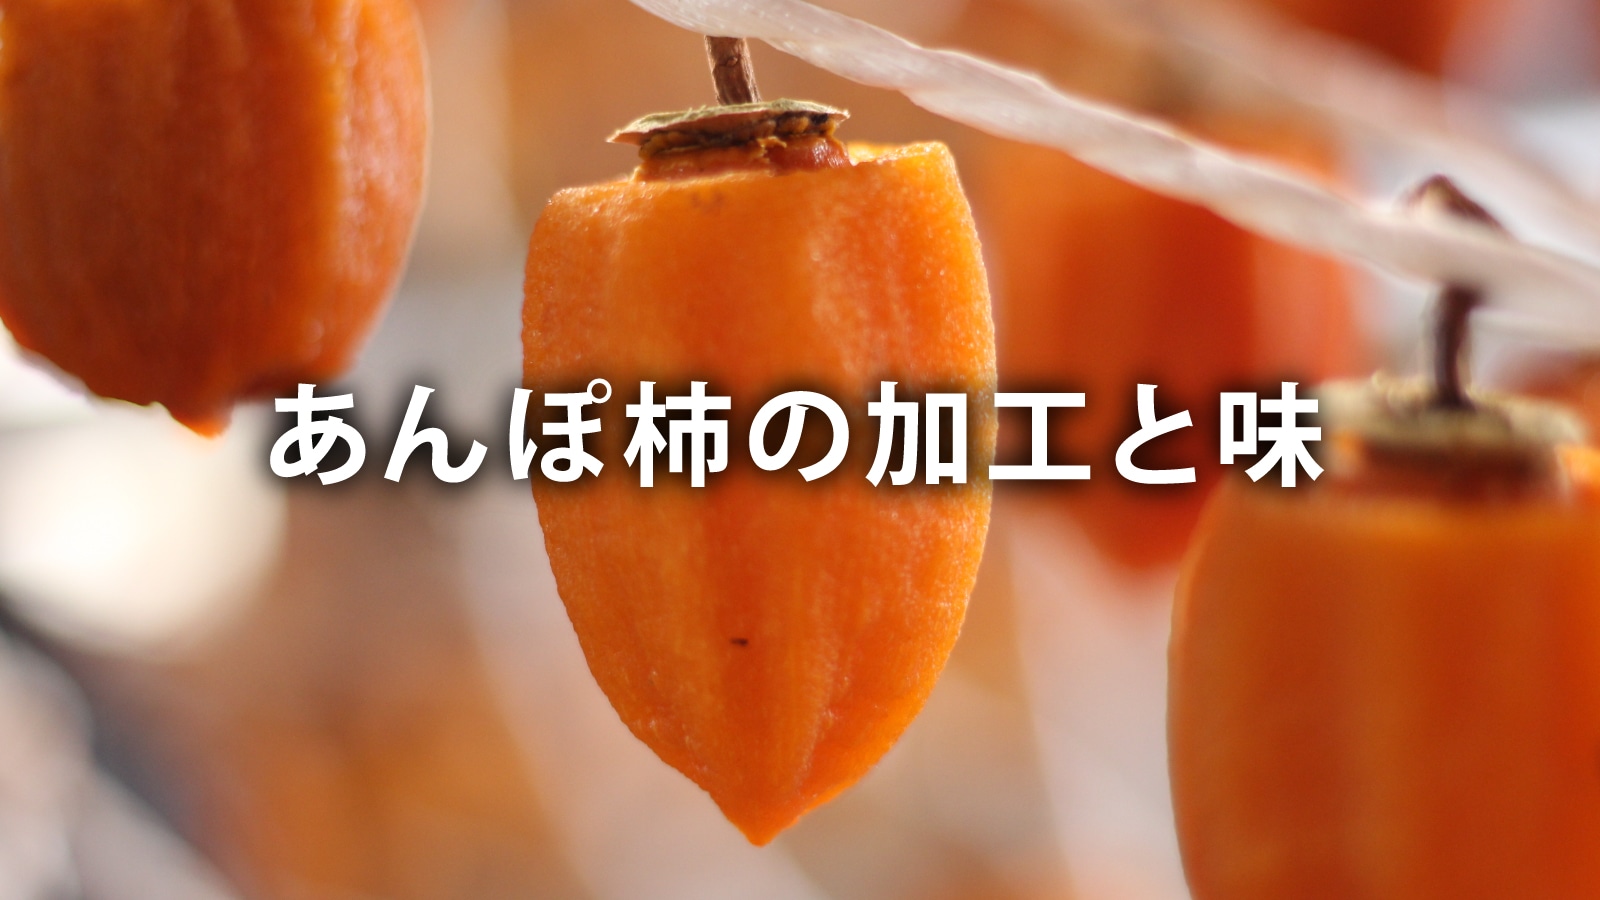 /w4/engeijin/ふくしま産あんぽ柿の加工と味